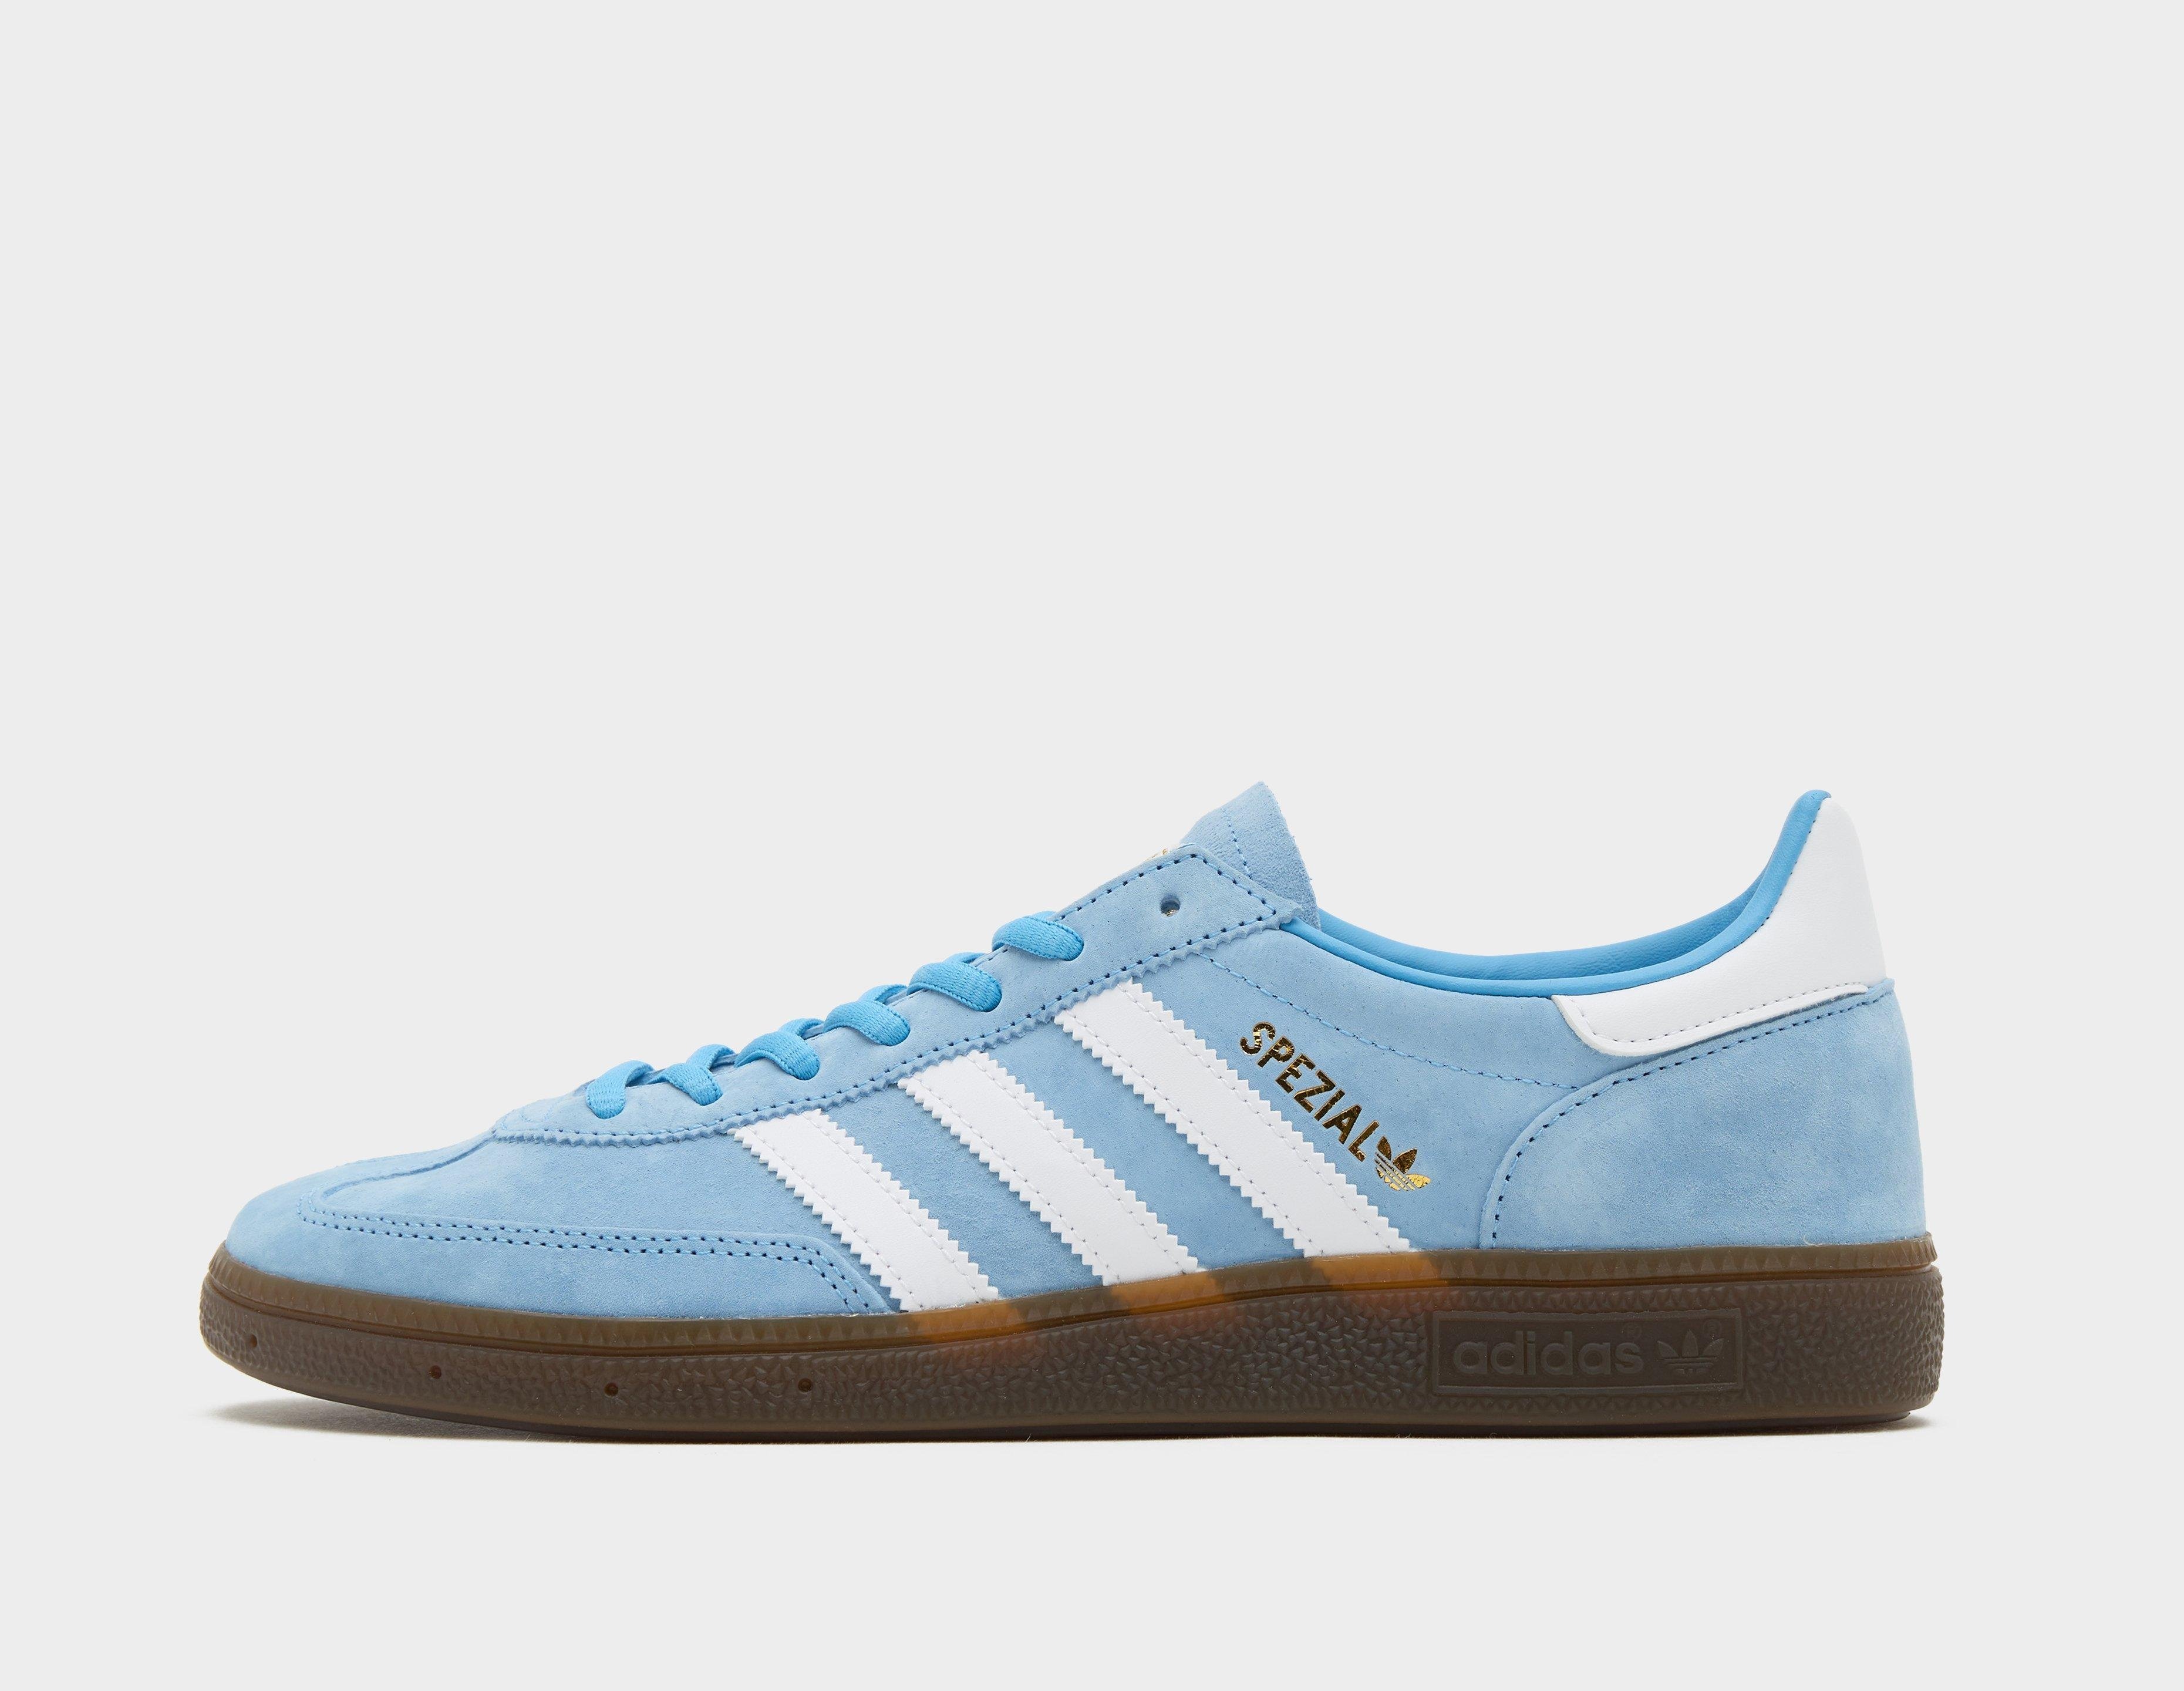 adidas Originals Handball Spezial, Blue | The Hoxton Trend